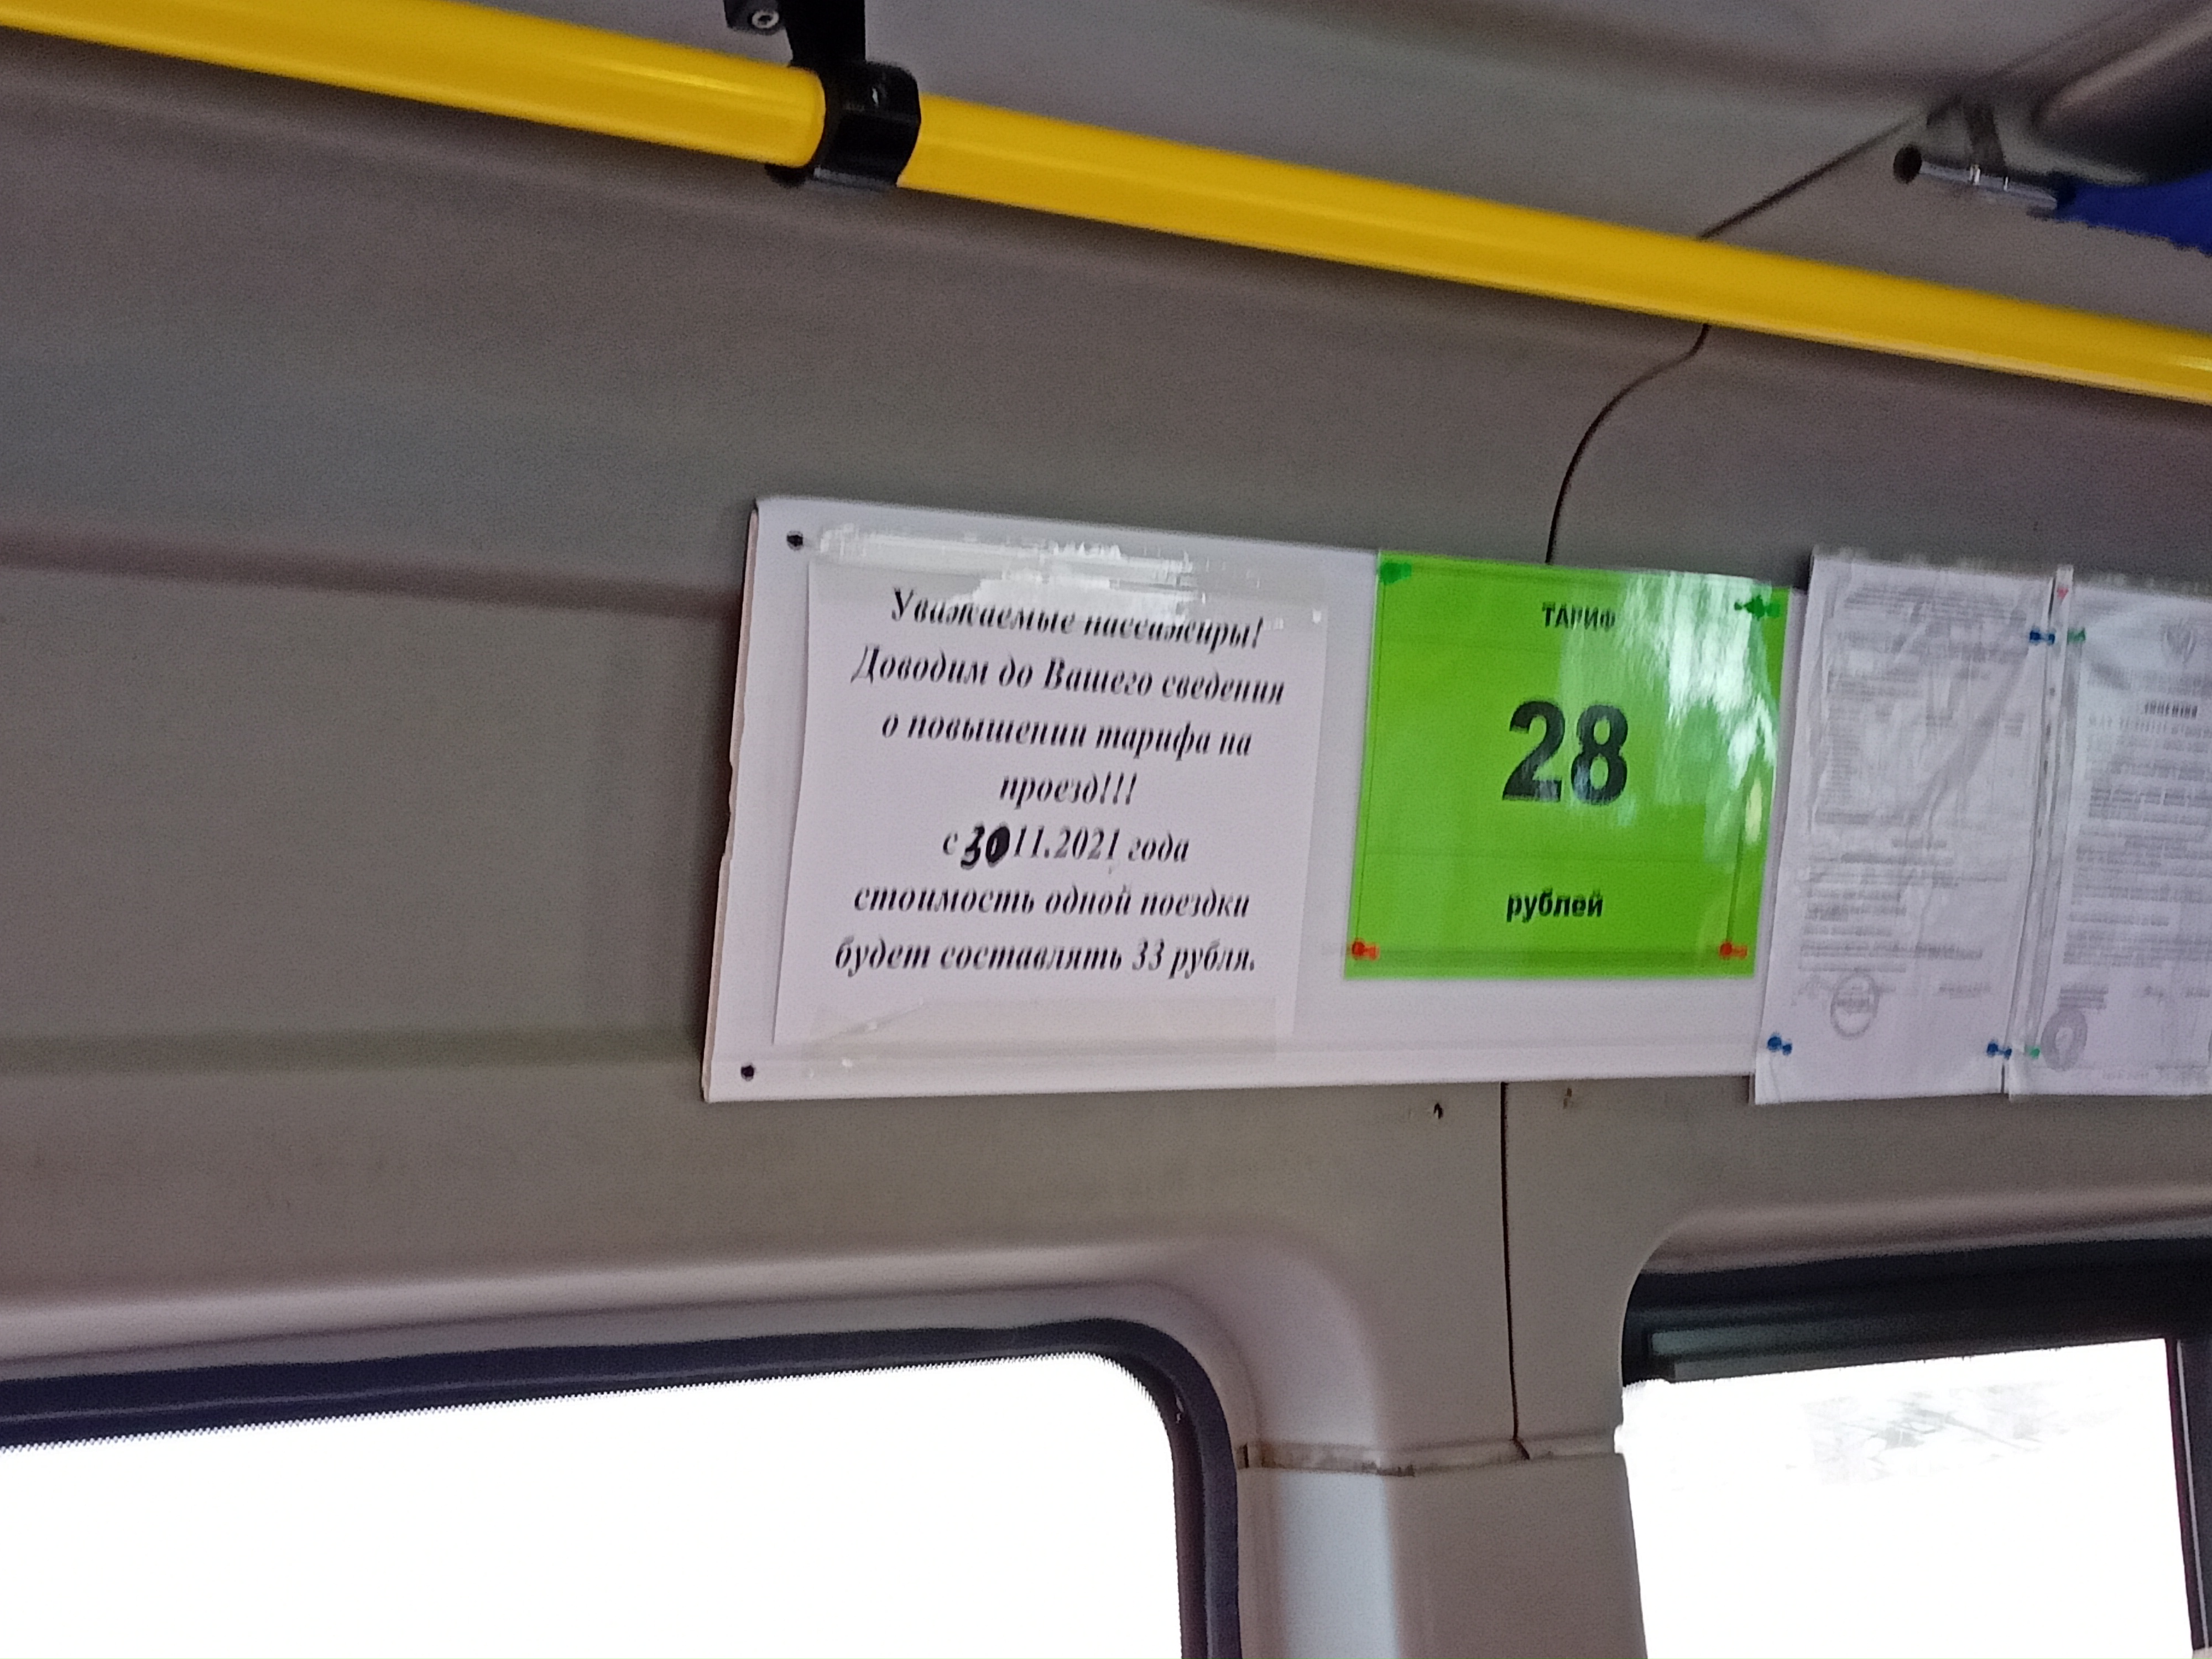 Проезд в читинской маршрутке № 28 вырастет до 33 рублей